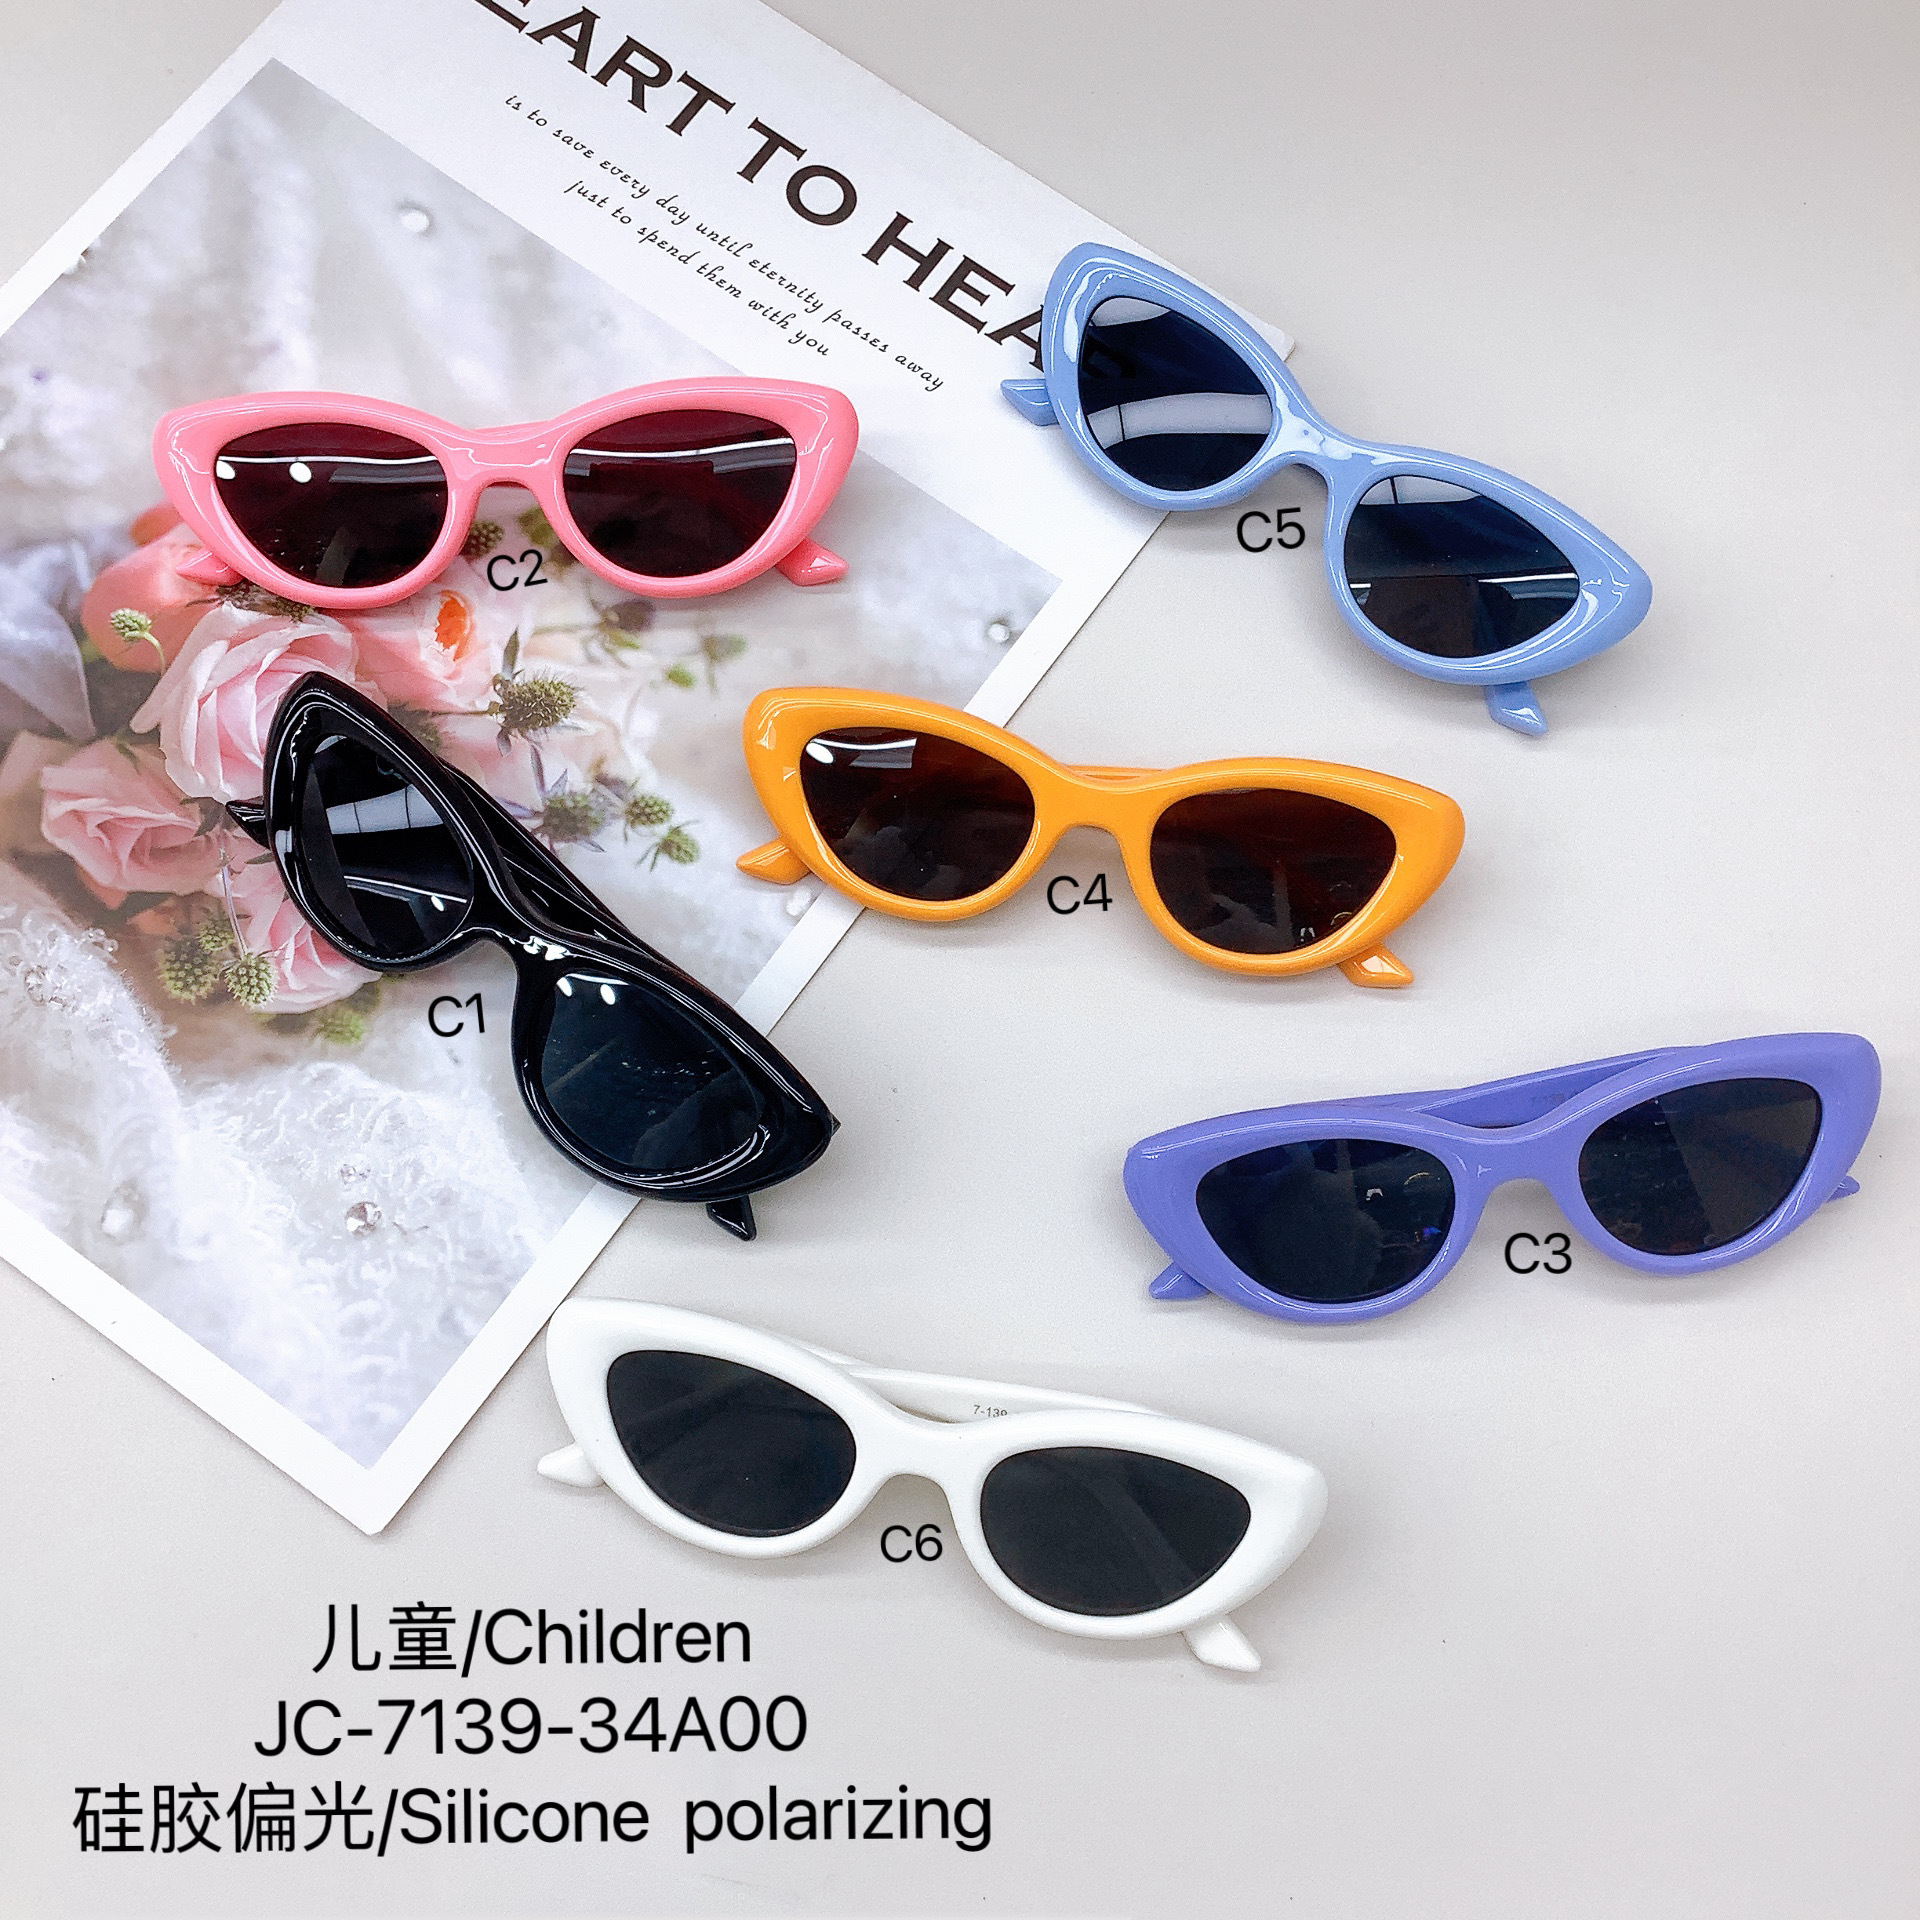 New Silicone Polarized Kids Sunglasses Cute Girls Sunglasses Sun Protection Uv Protection Boys Glasses Tide